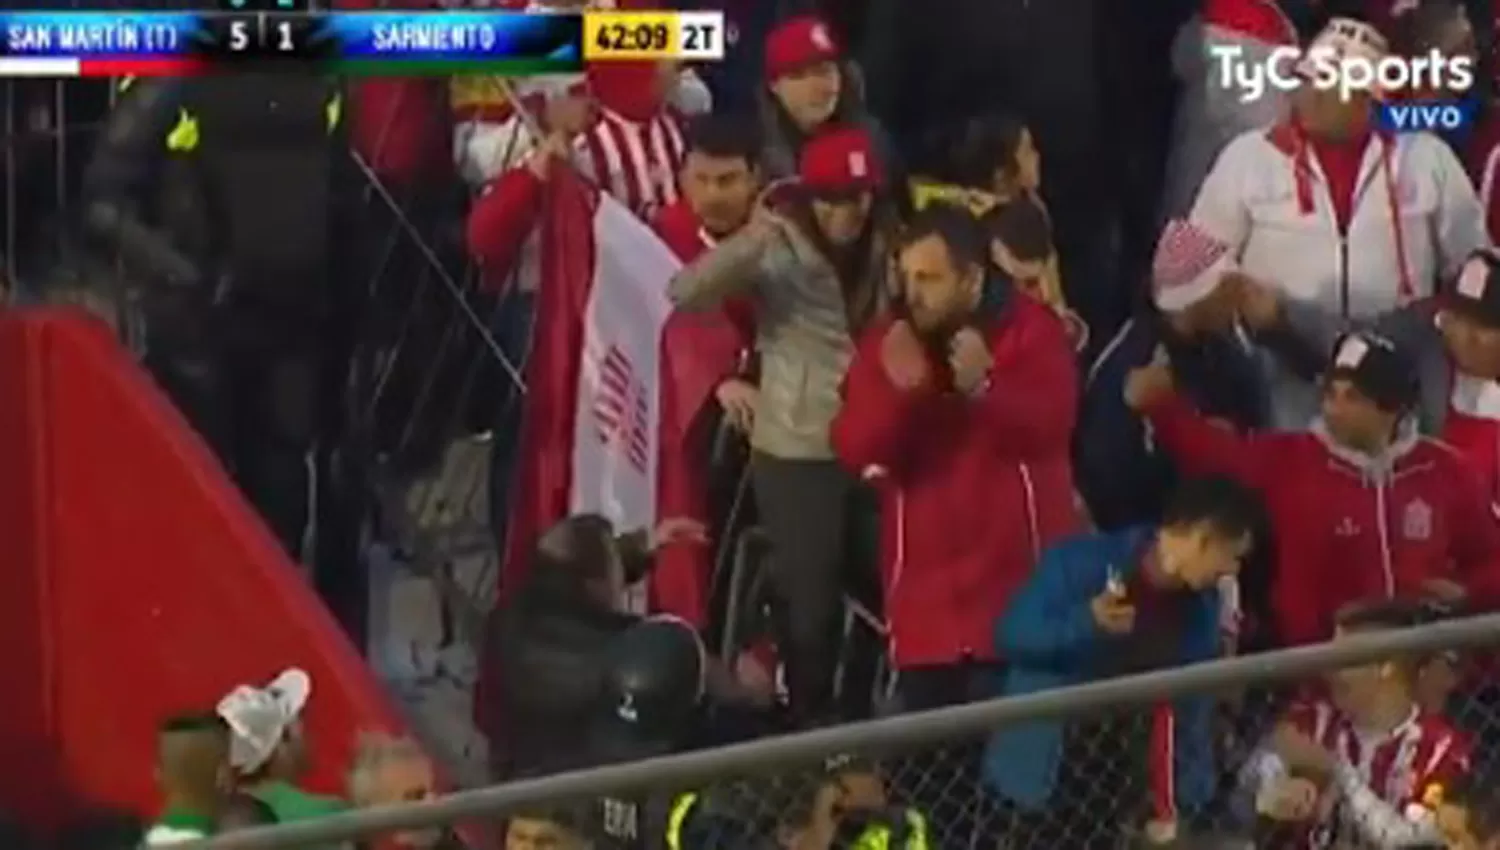 GRAN GESTO. Los hinchas de Sarmiento se retiraron saludando a los Santos. (CAPTURA DE VIDEO)